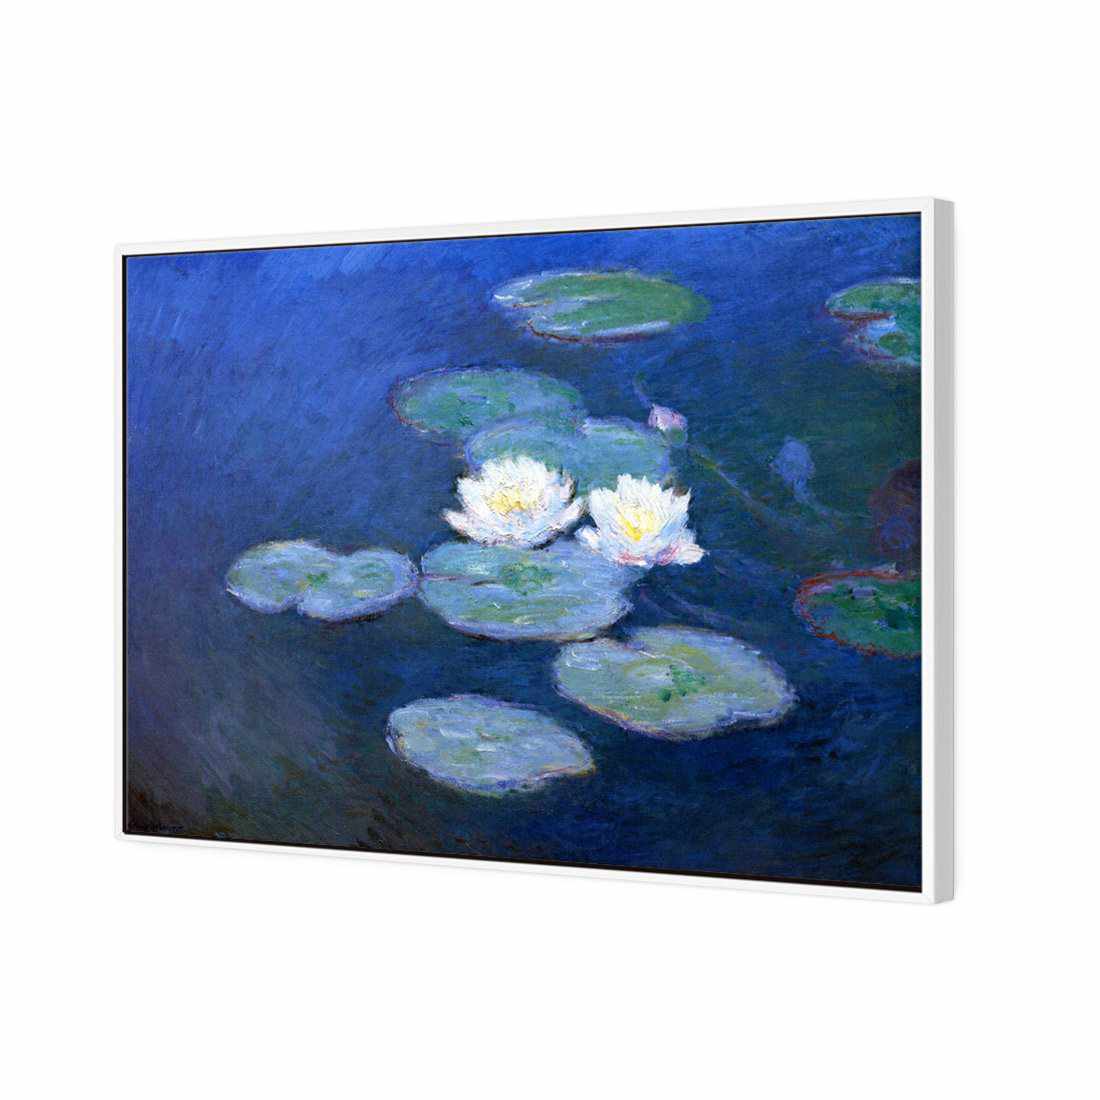 Water Lilies 7 - Monet Canvas Art-Canvas-Wall Art Designs-45x30cm-Canvas - White Frame-Wall Art Designs